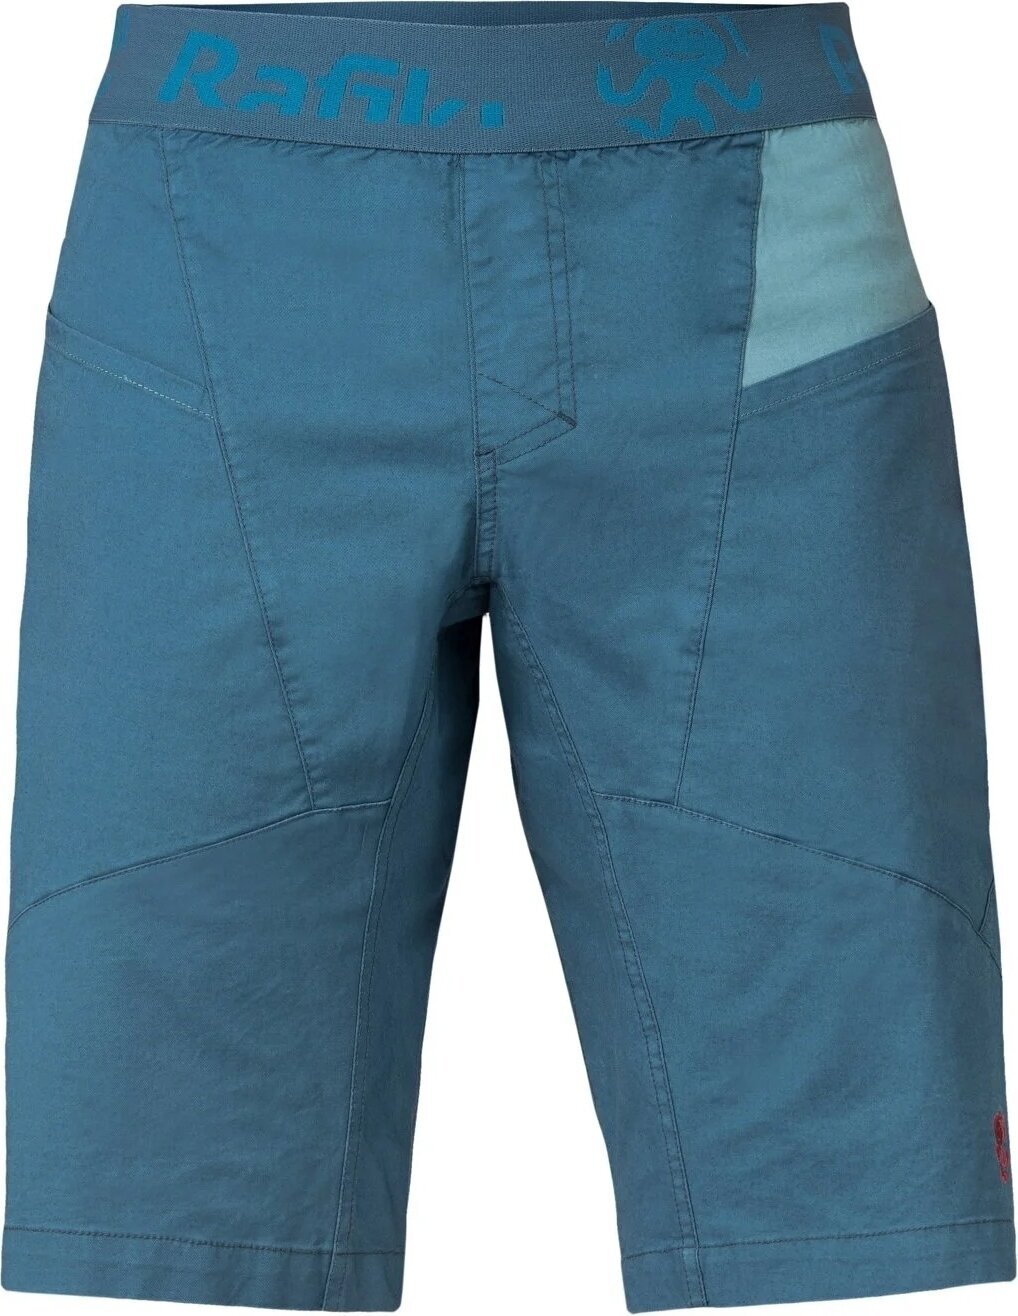 Kratke hlače na otvorenom Rafiki Megos Man Shorts Stargazer/Atlantic XL Kratke hlače na otvorenom